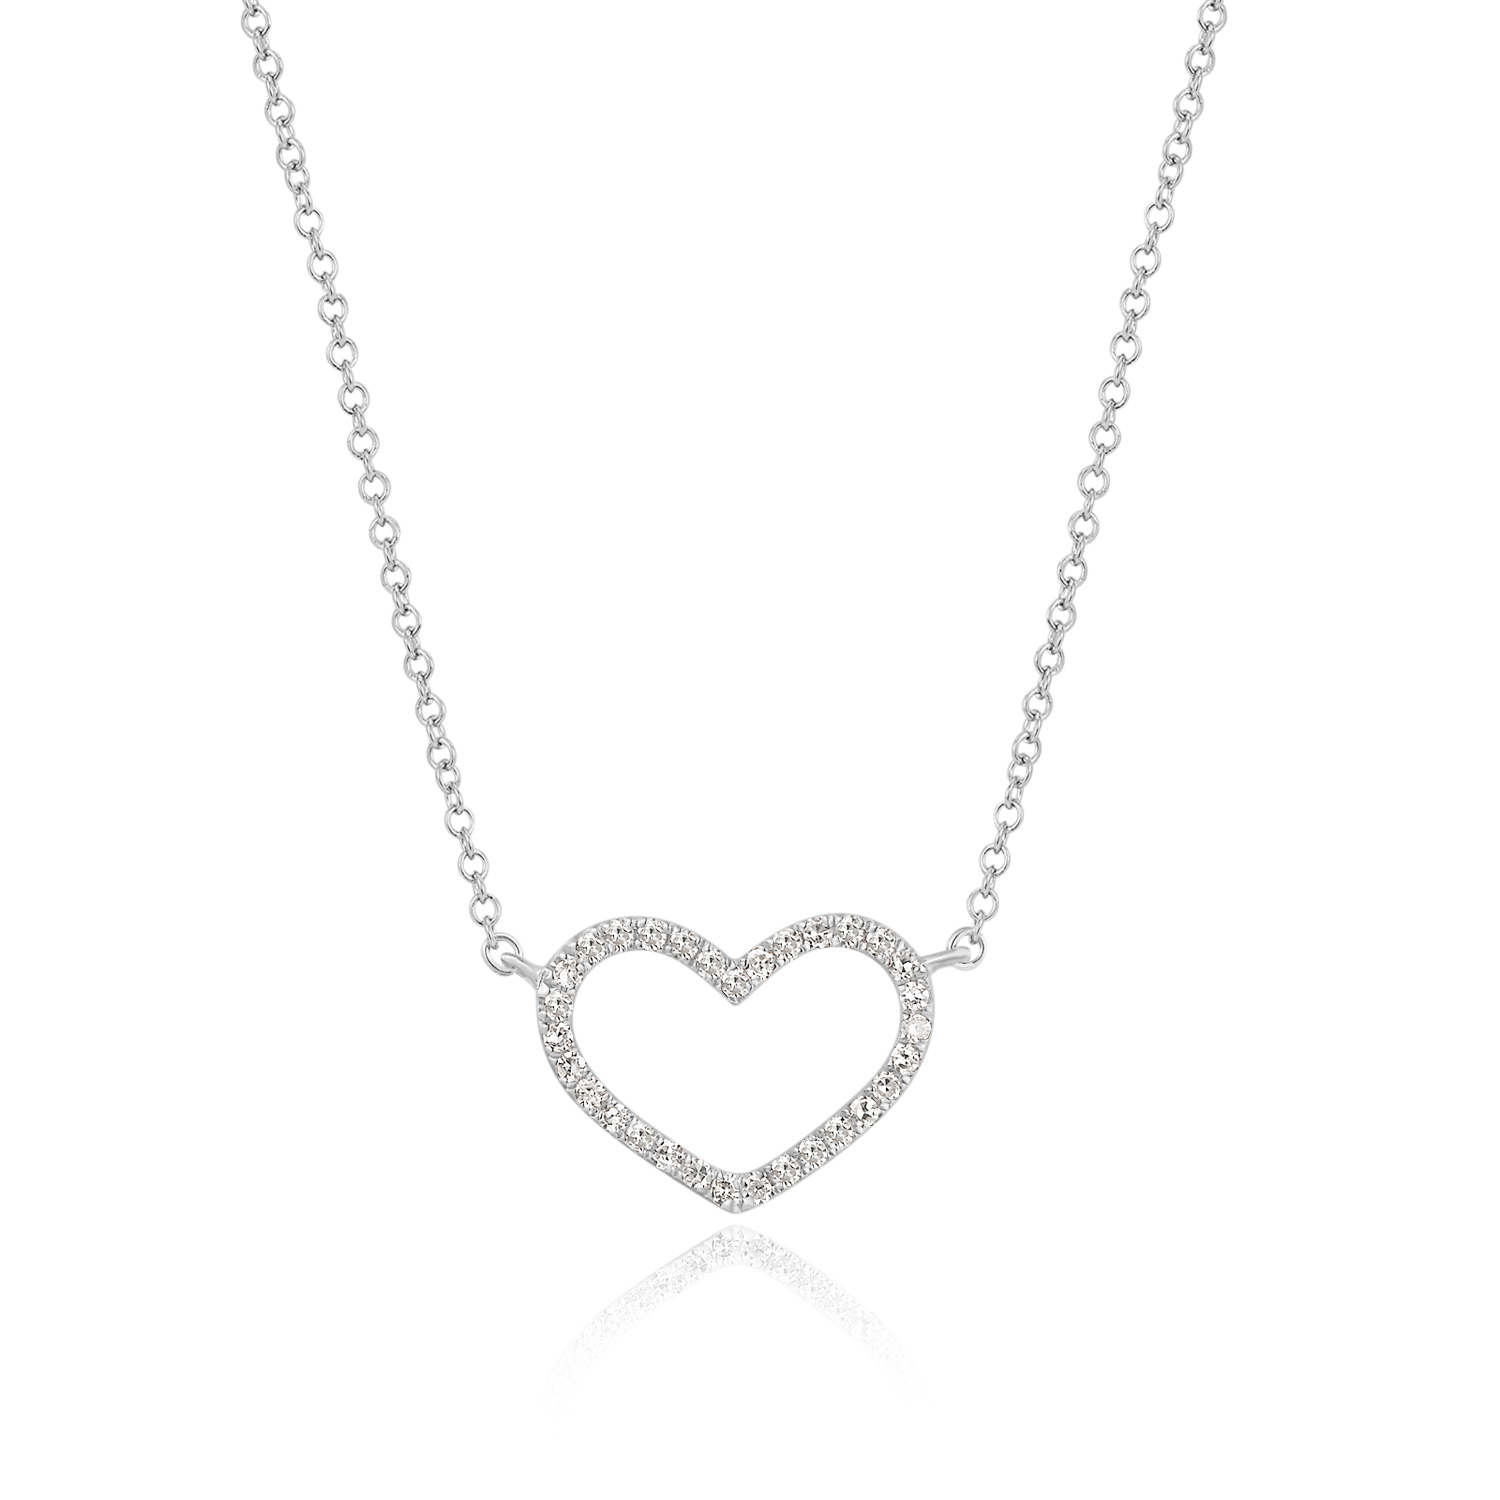 Halskette Heart mit Diamanten, 18 K Weissgold